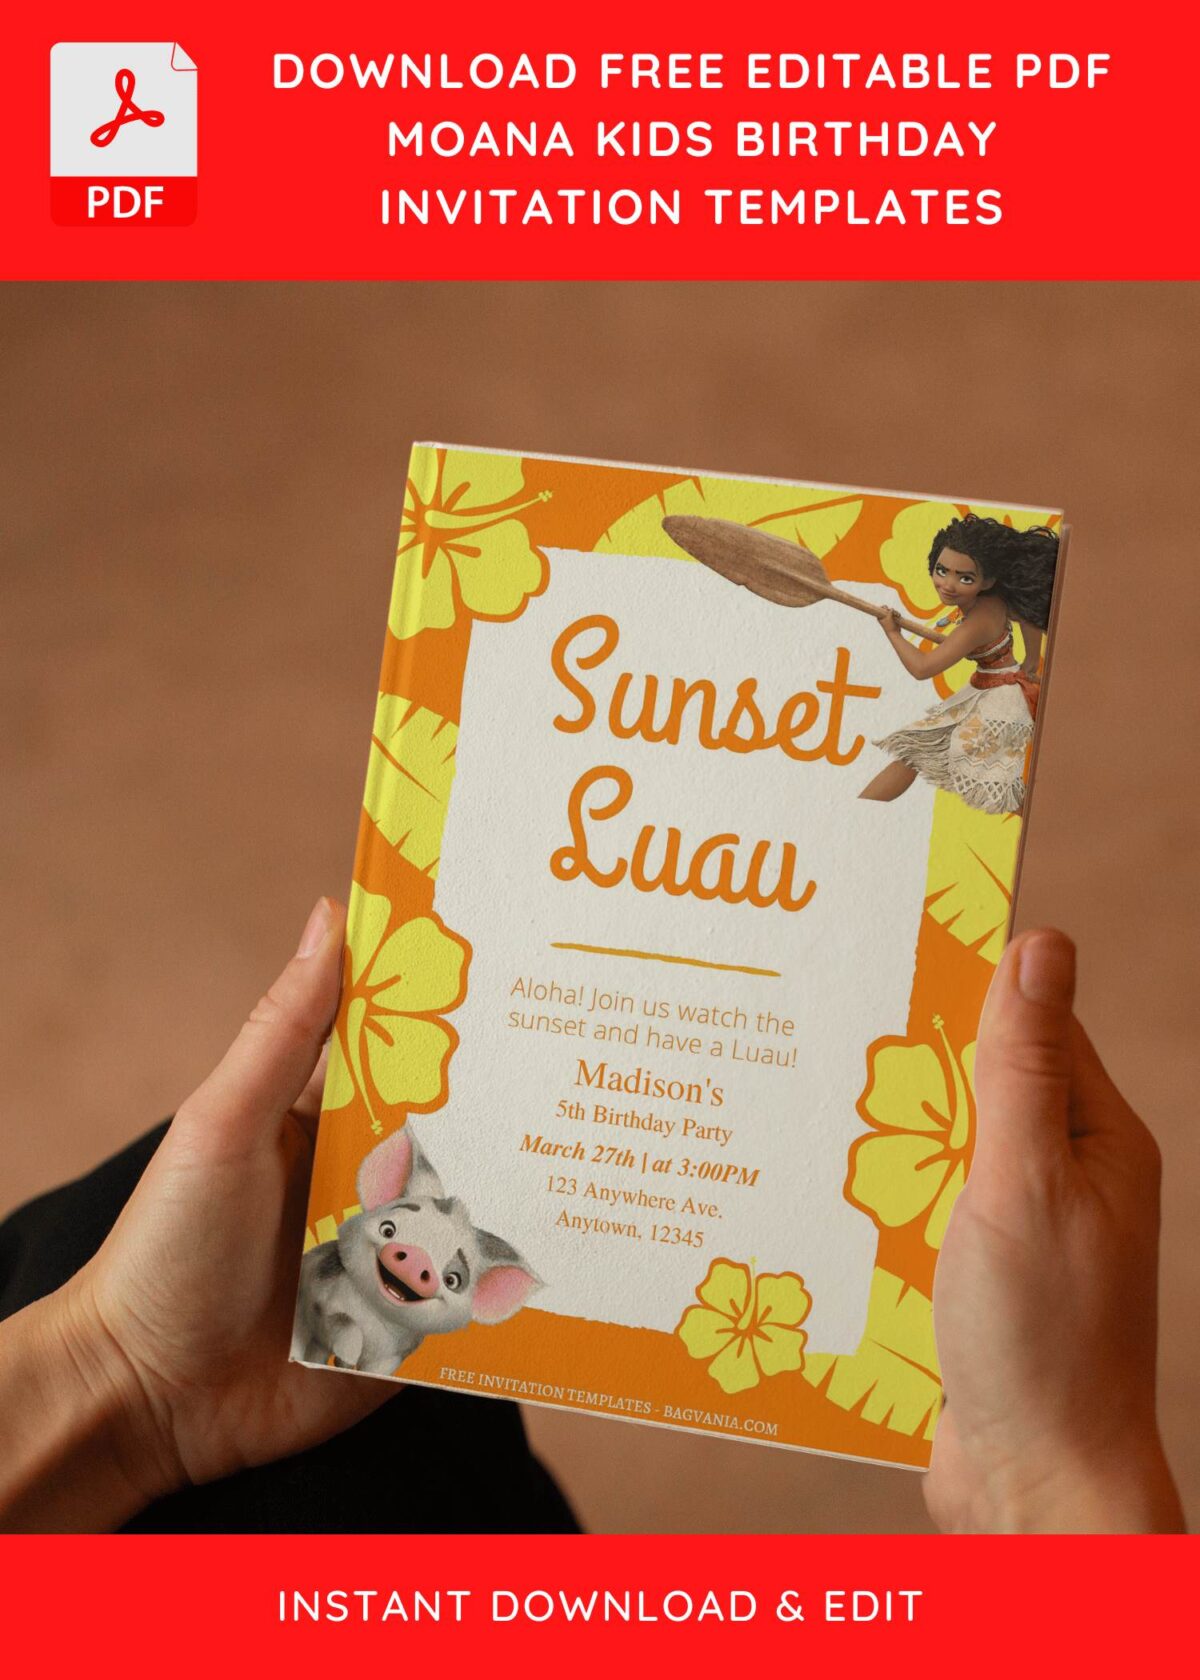 (Free Editable PDF) Cute Sunset Luau Moana Birthday Invitation Templates E